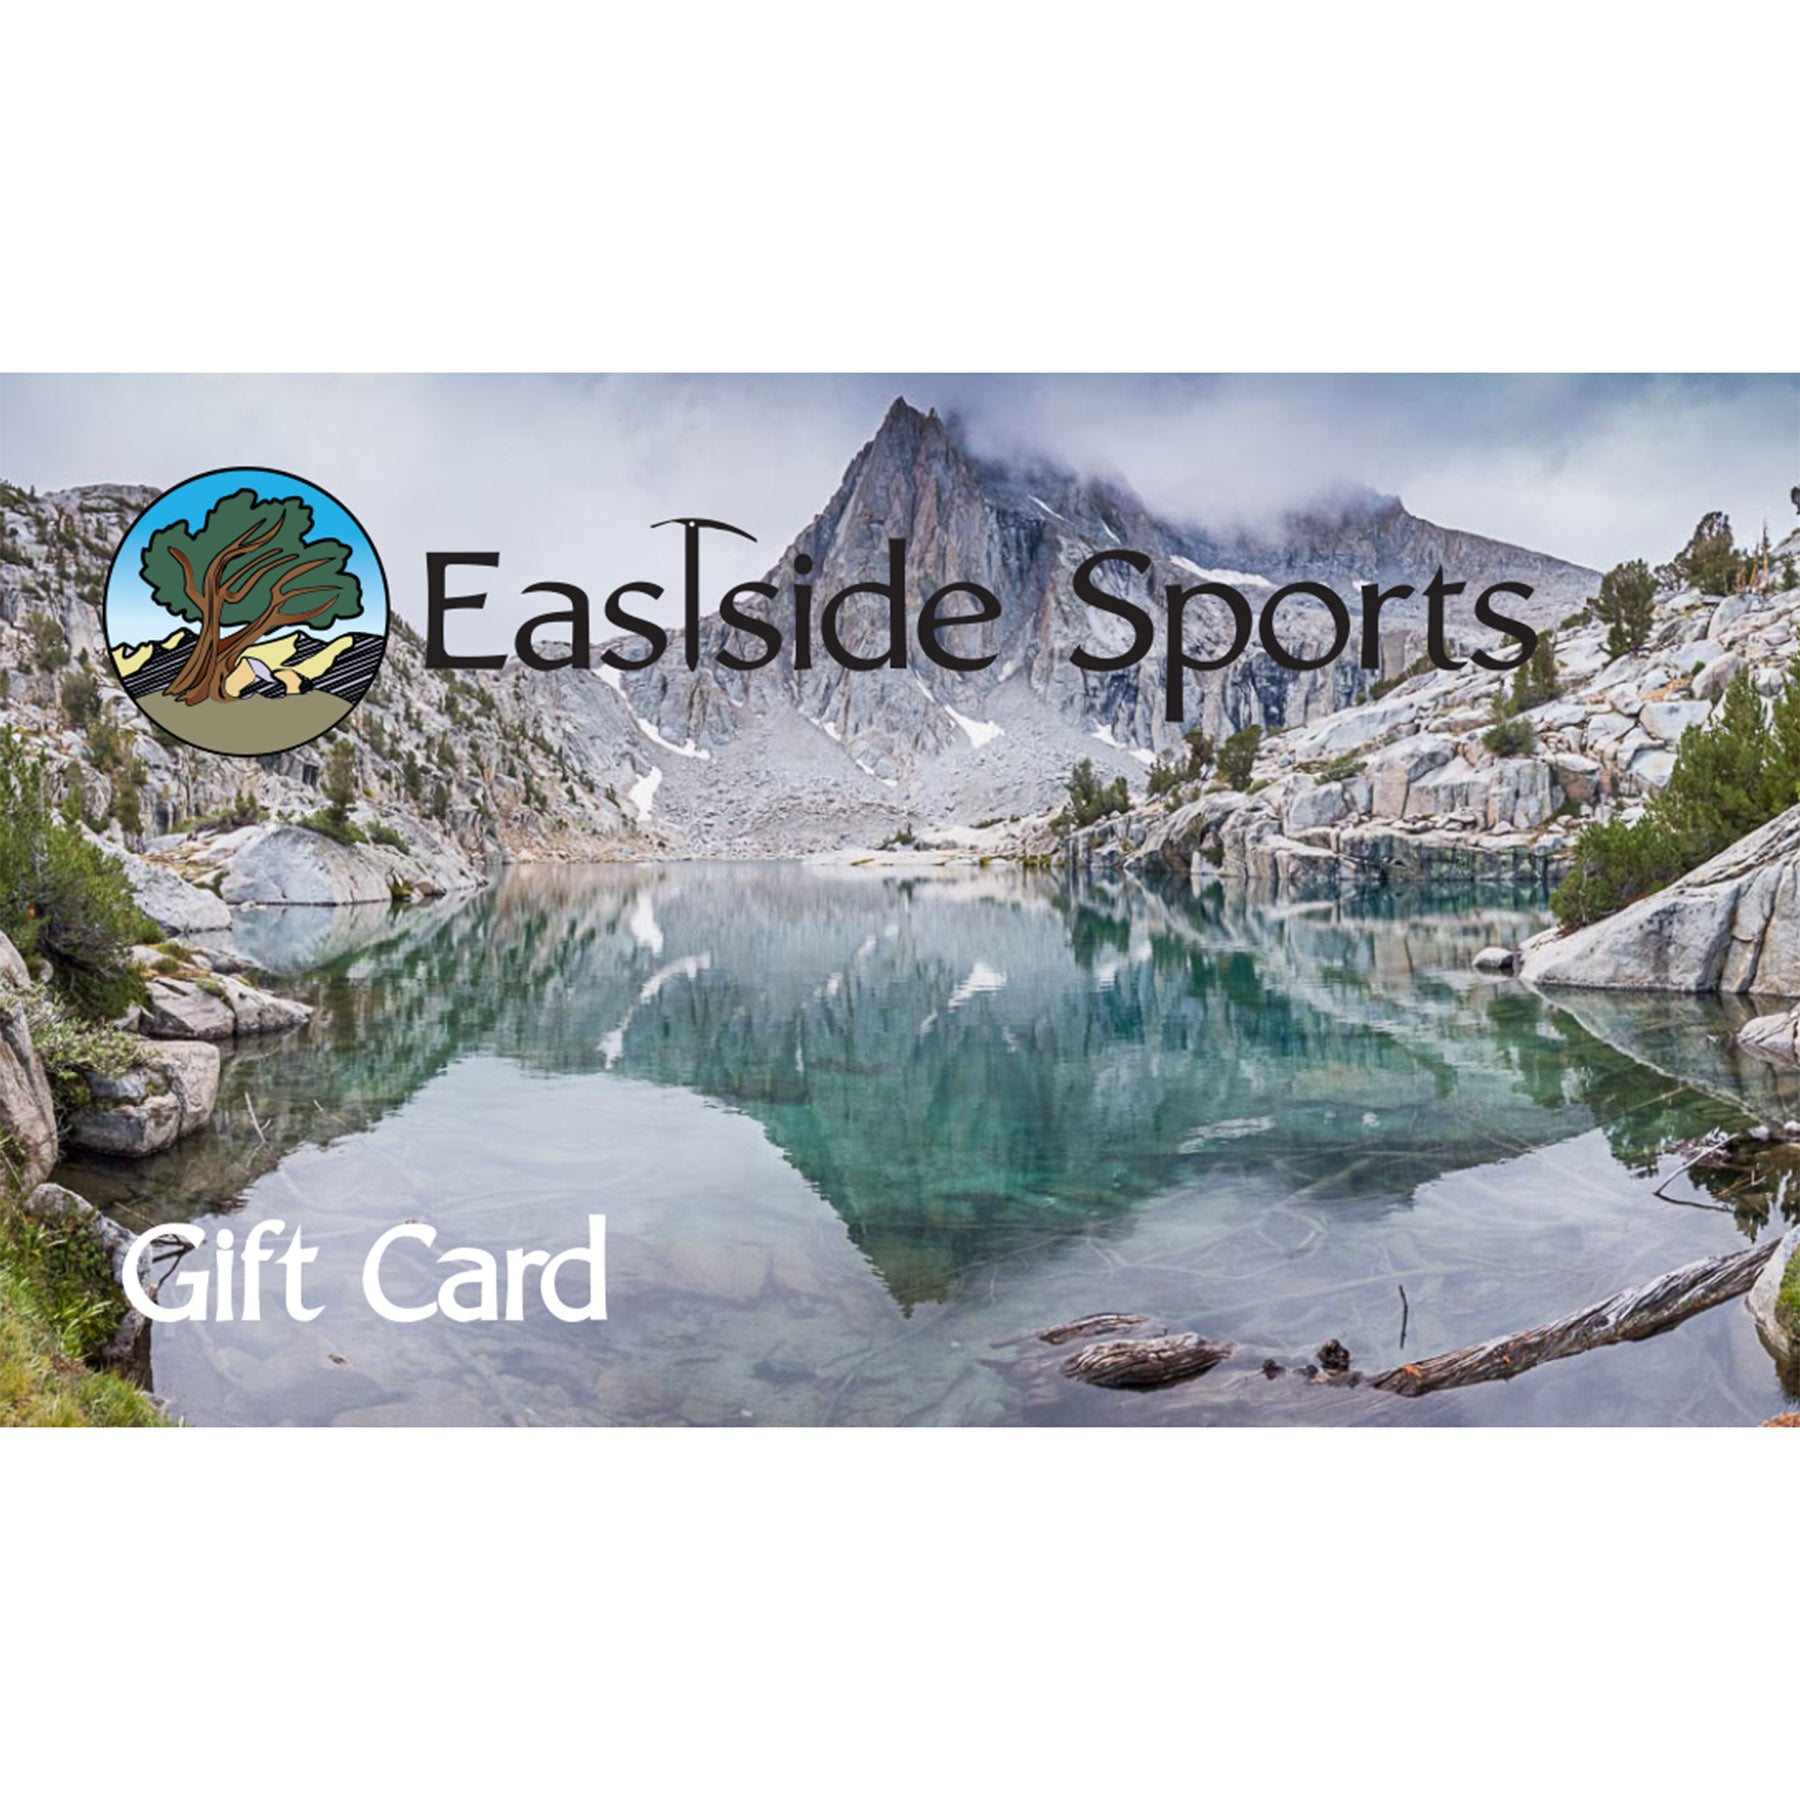 Eastside Sports Gift Card